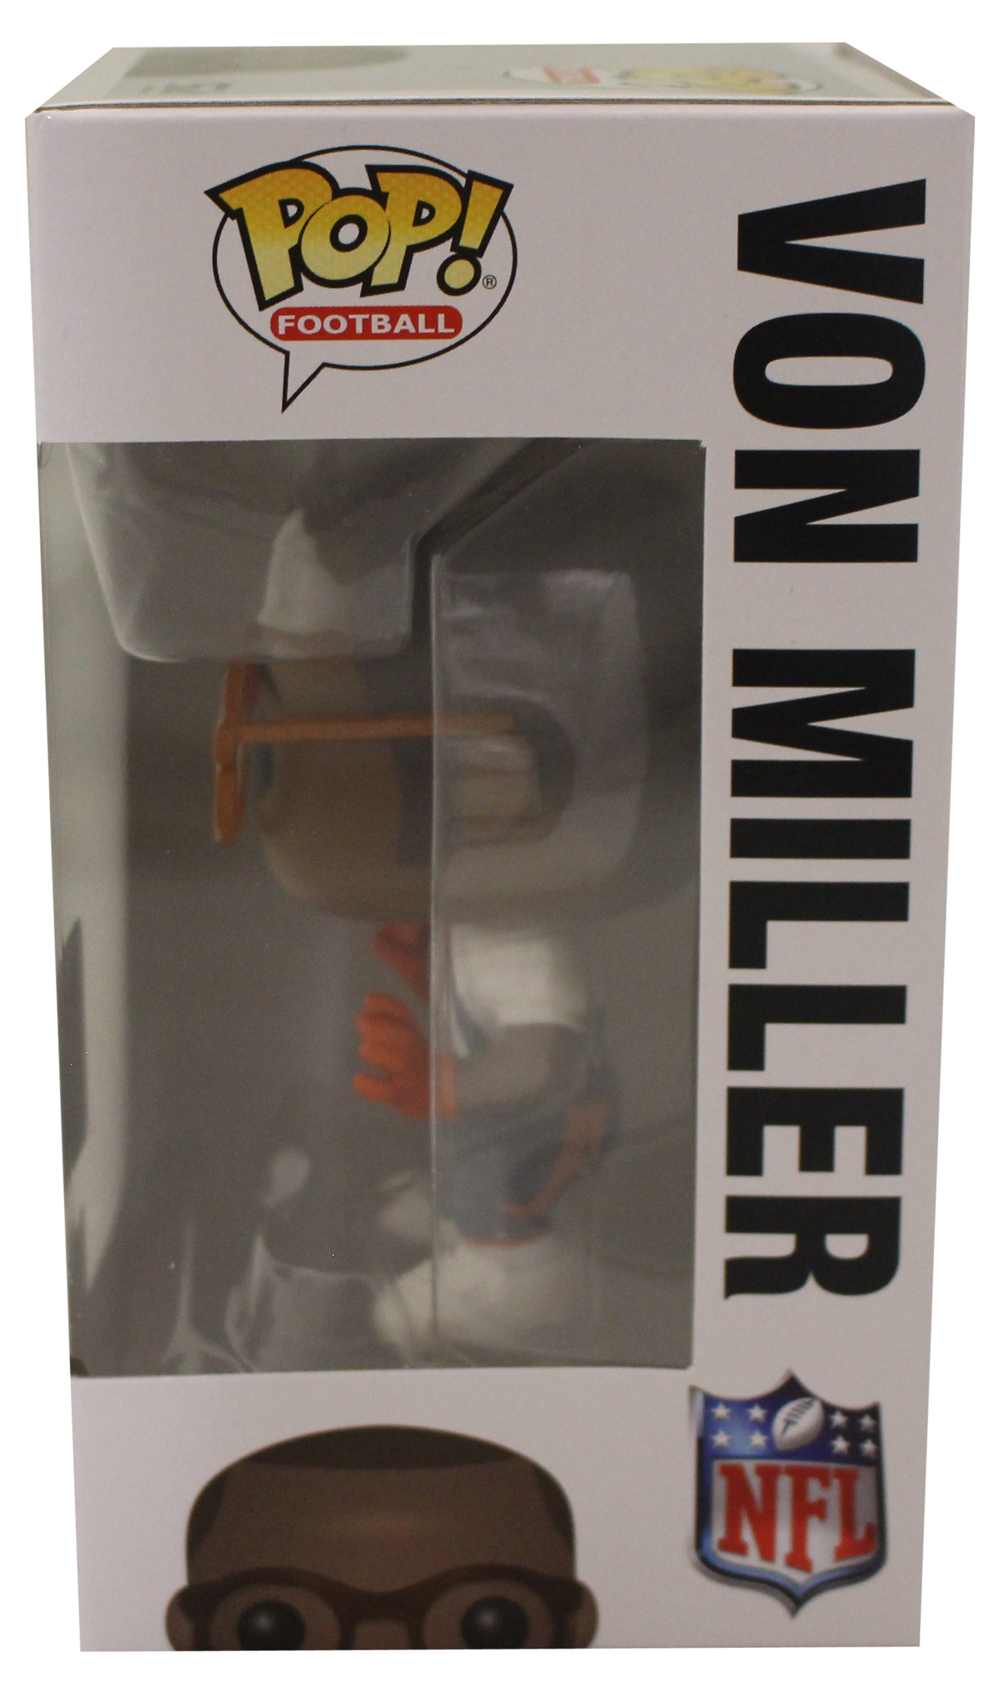 Von Miller Denver Broncos NFL Funko Pop! #60 New